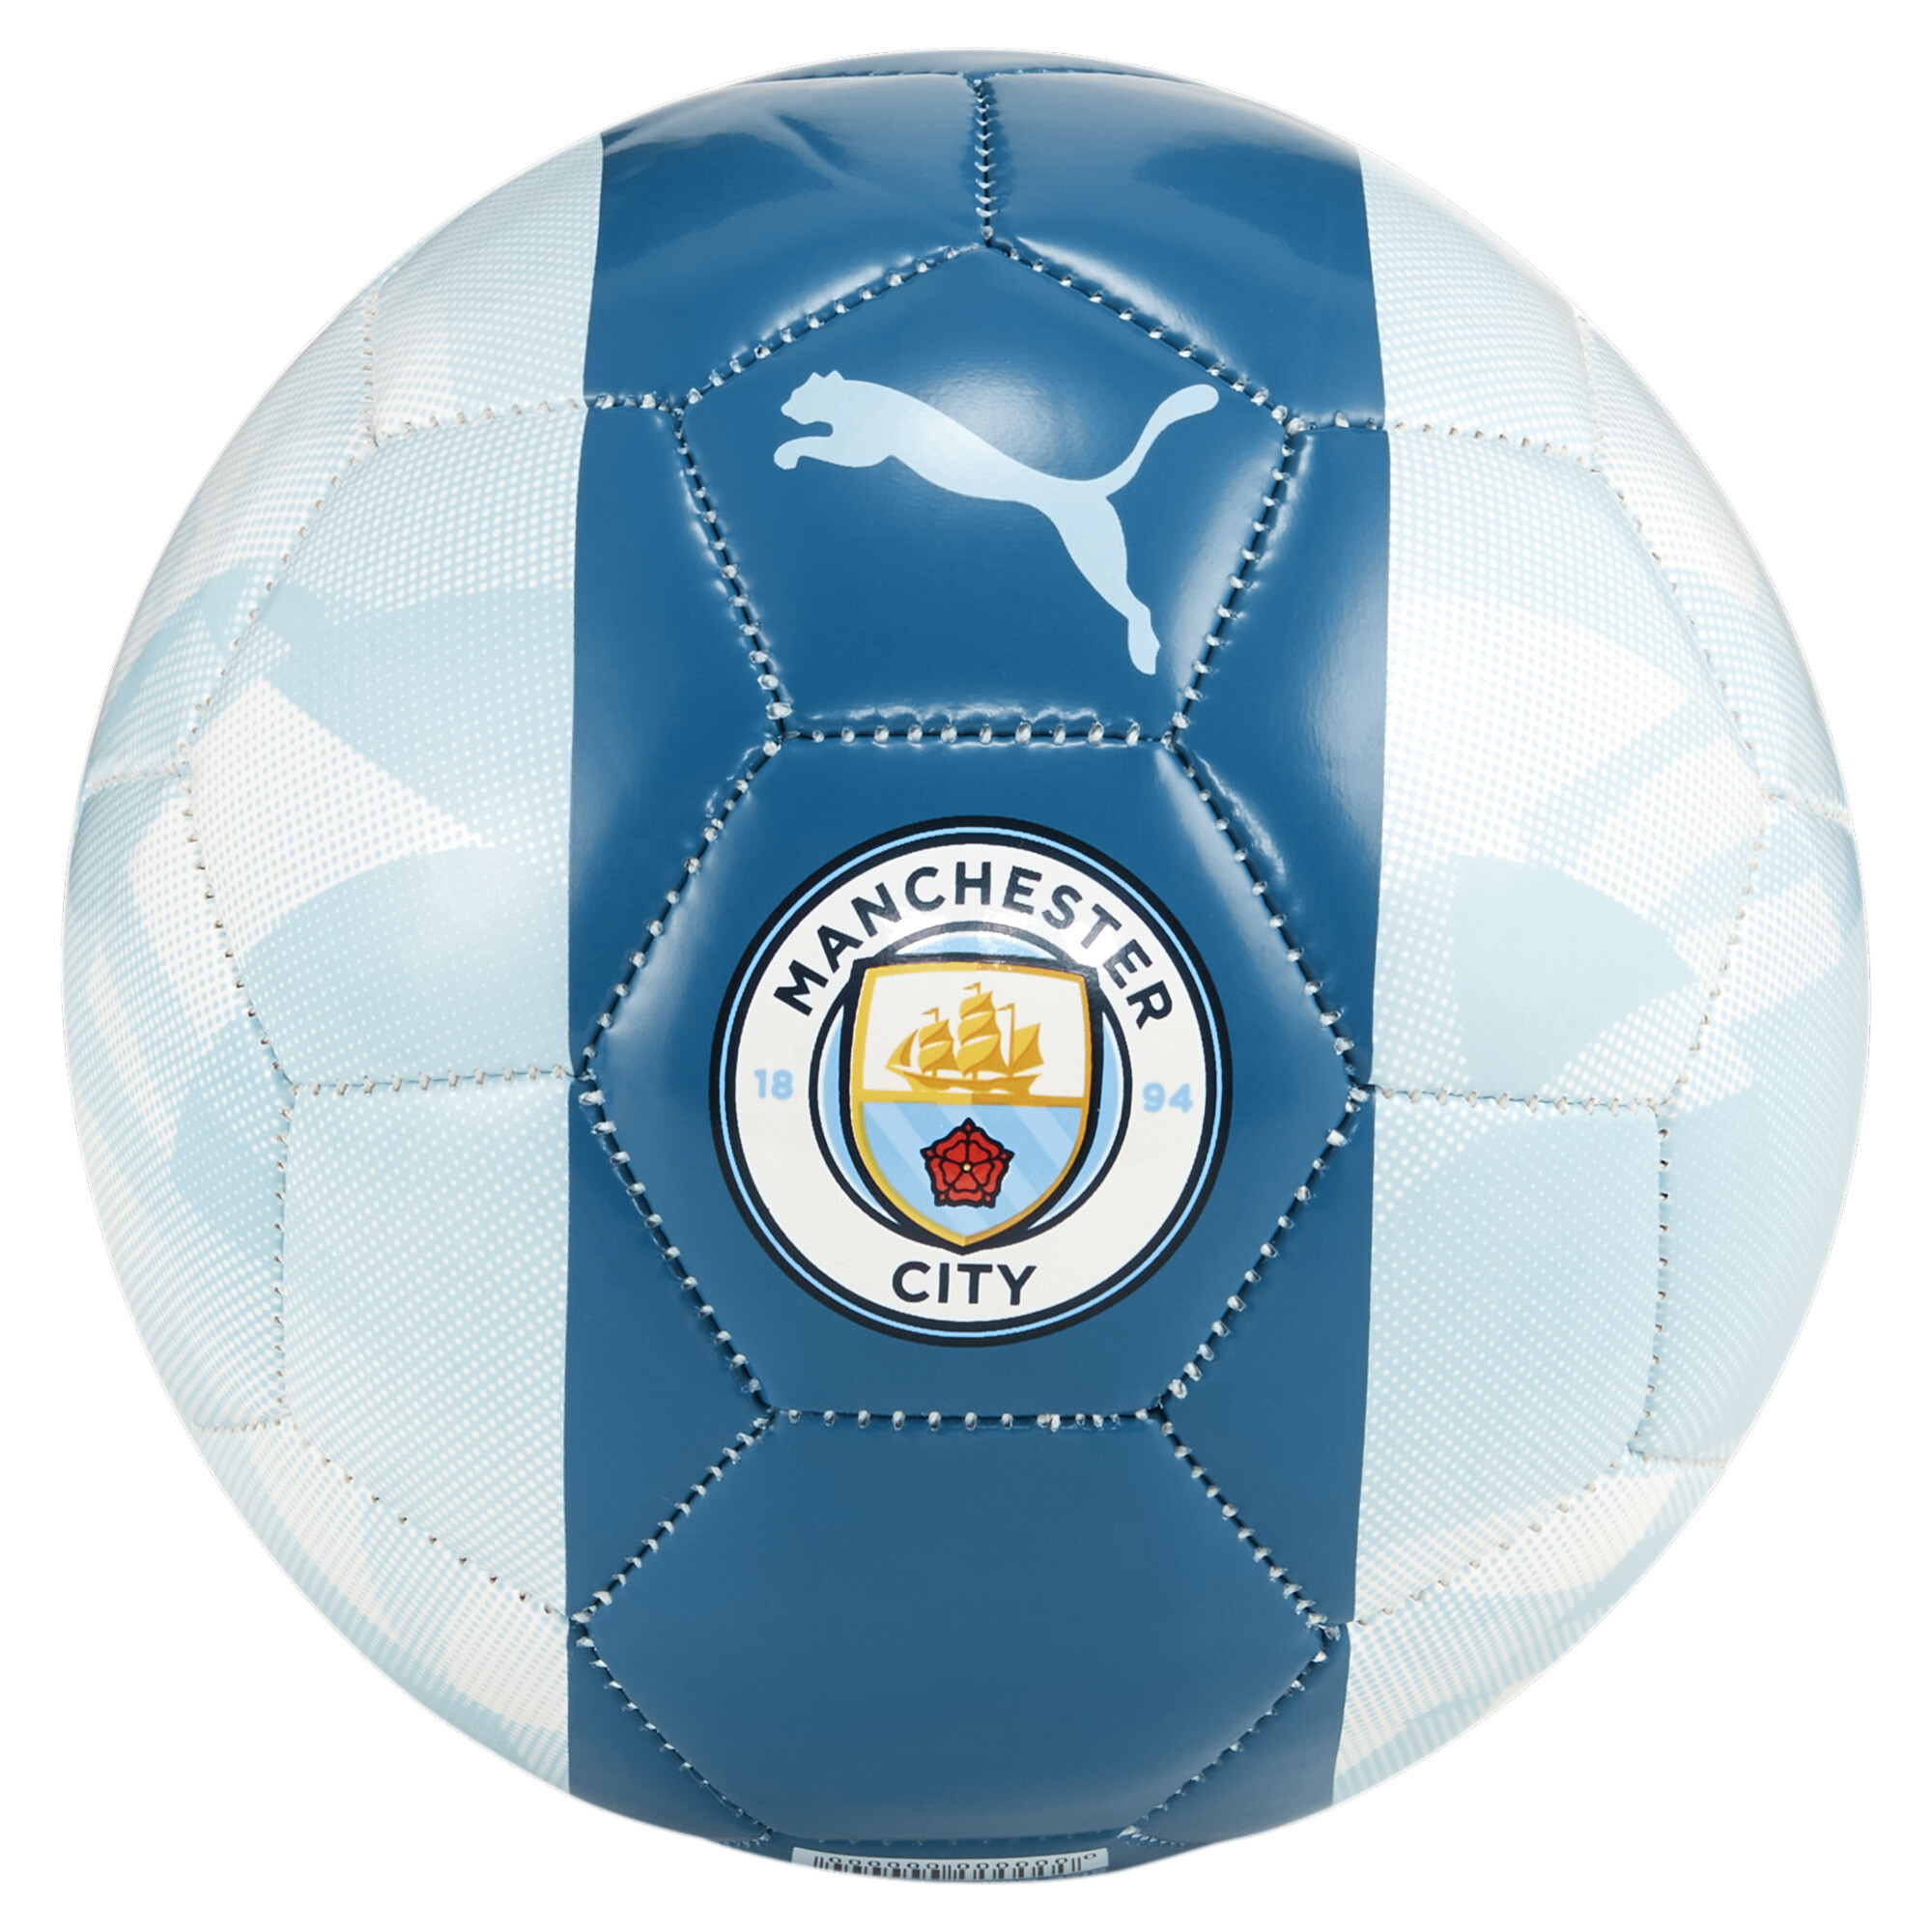 Men's PUMA Manchester City FtblCore Mini Football In 80 - Blue, Size